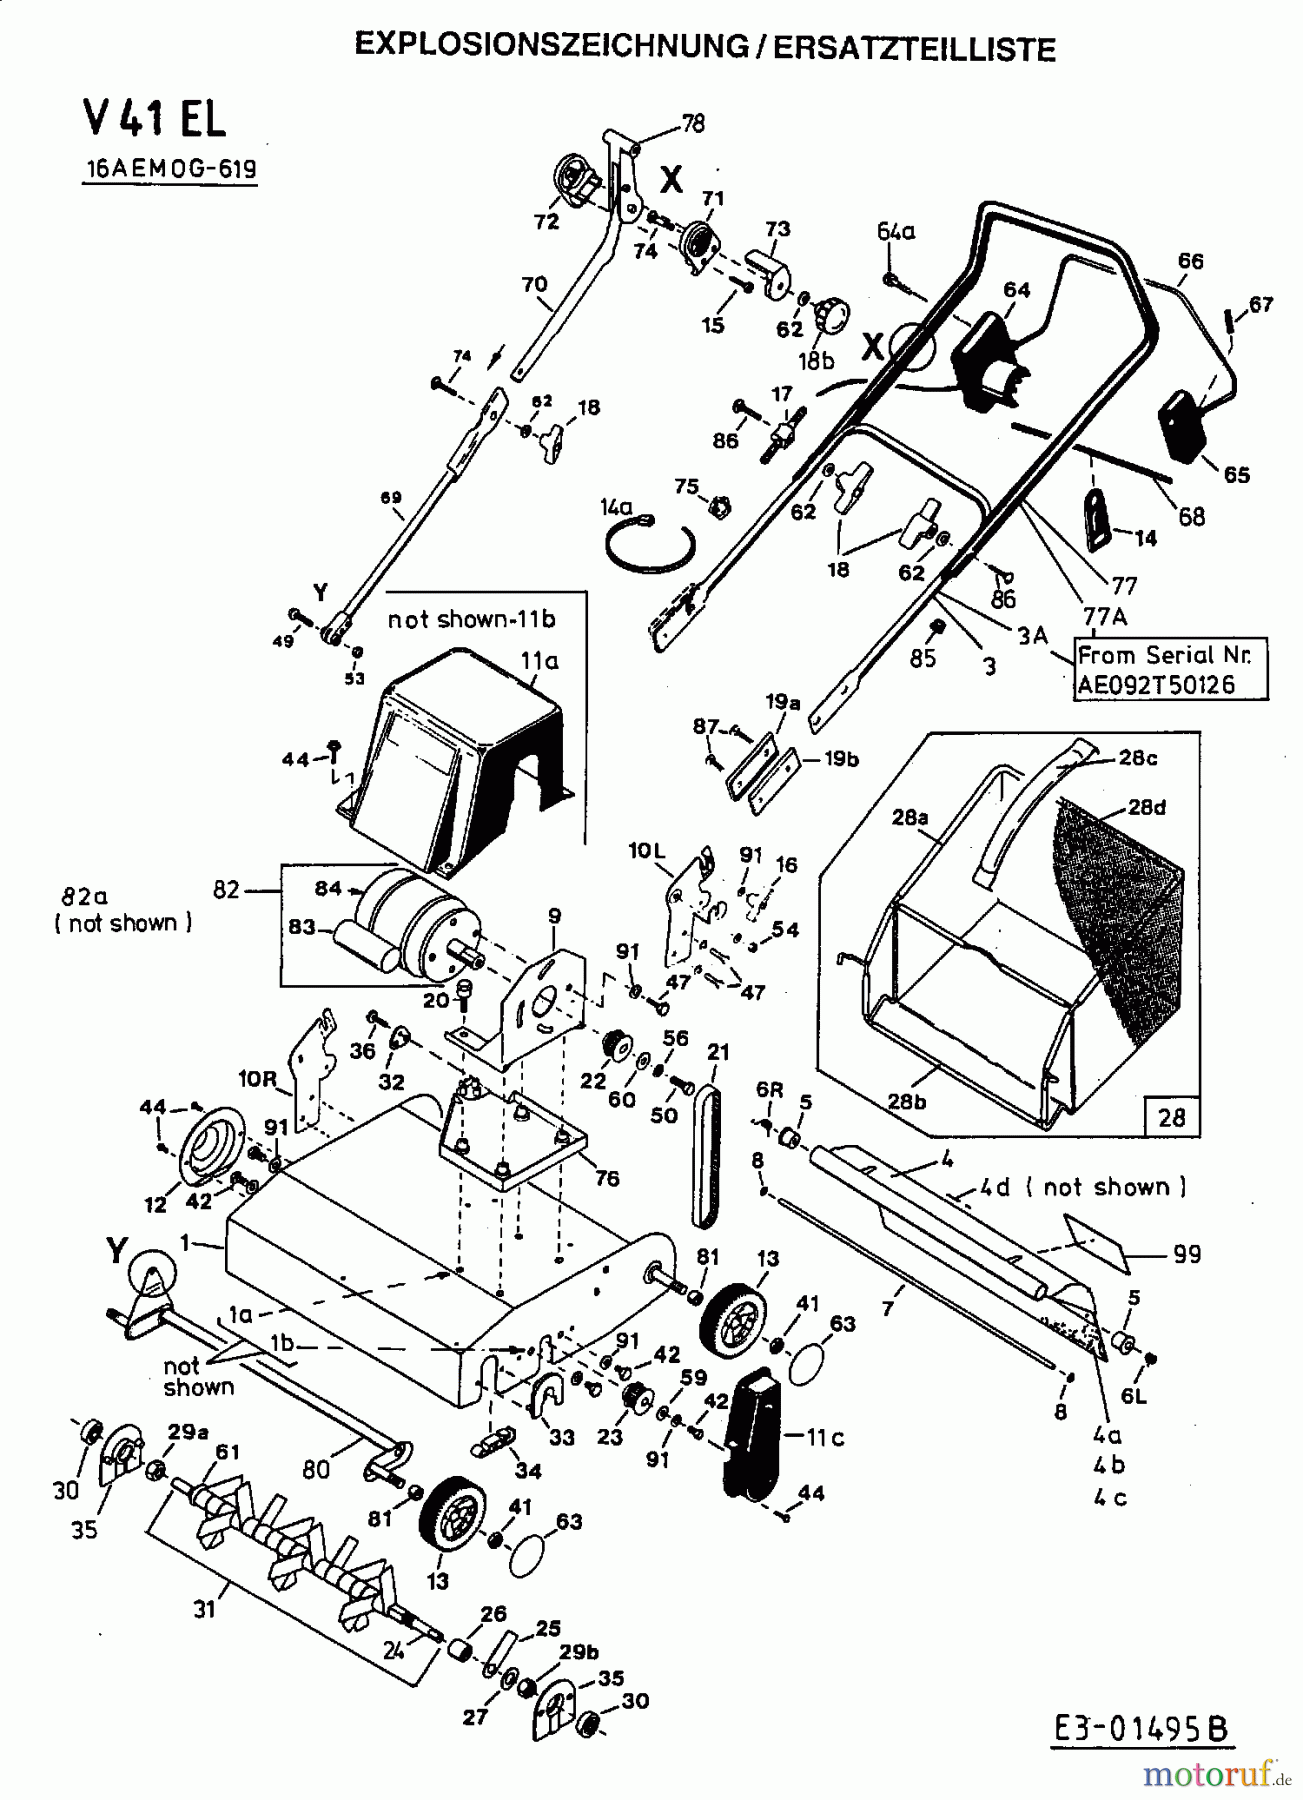  Fleurelle Elektrovertikutierer V 41 EL 16AEM0G-619  (2001) Grundgerät